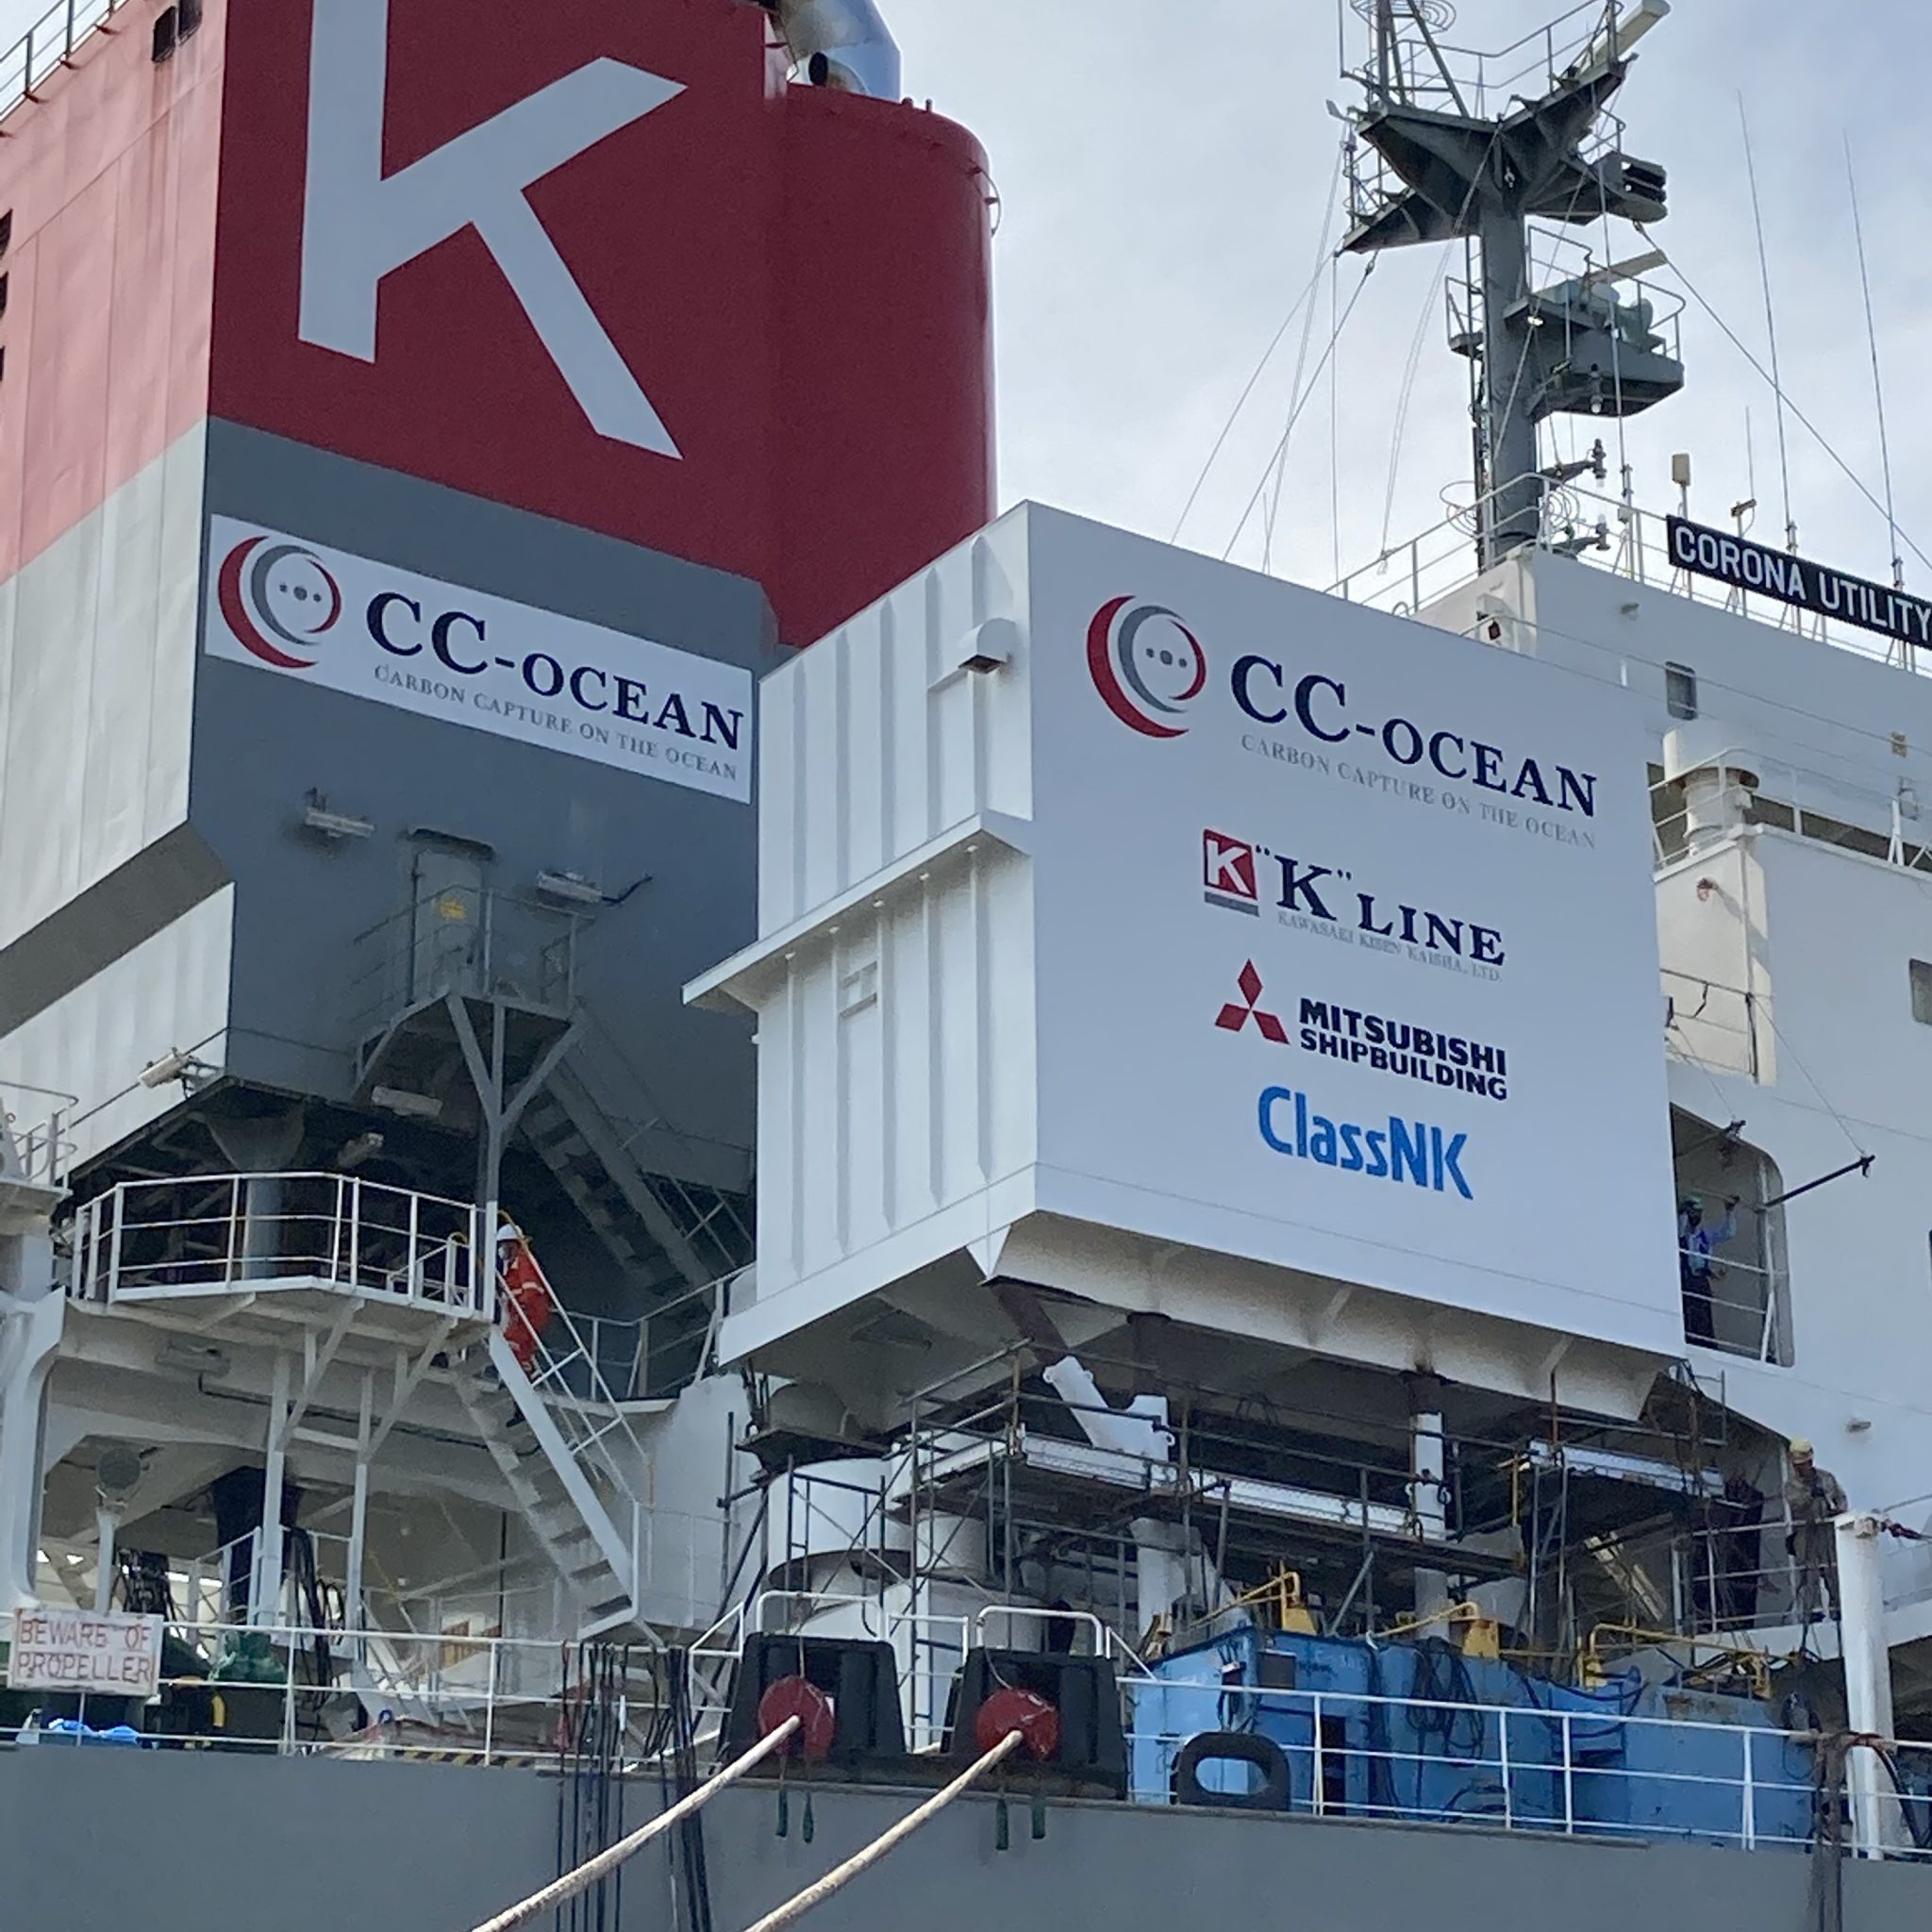 De CC-Ocean CO2-opvanginstallatie aan boord van de bulkcarrier Corona Utility. Er wordt een klein jaar mee getest. (Foto K Line)